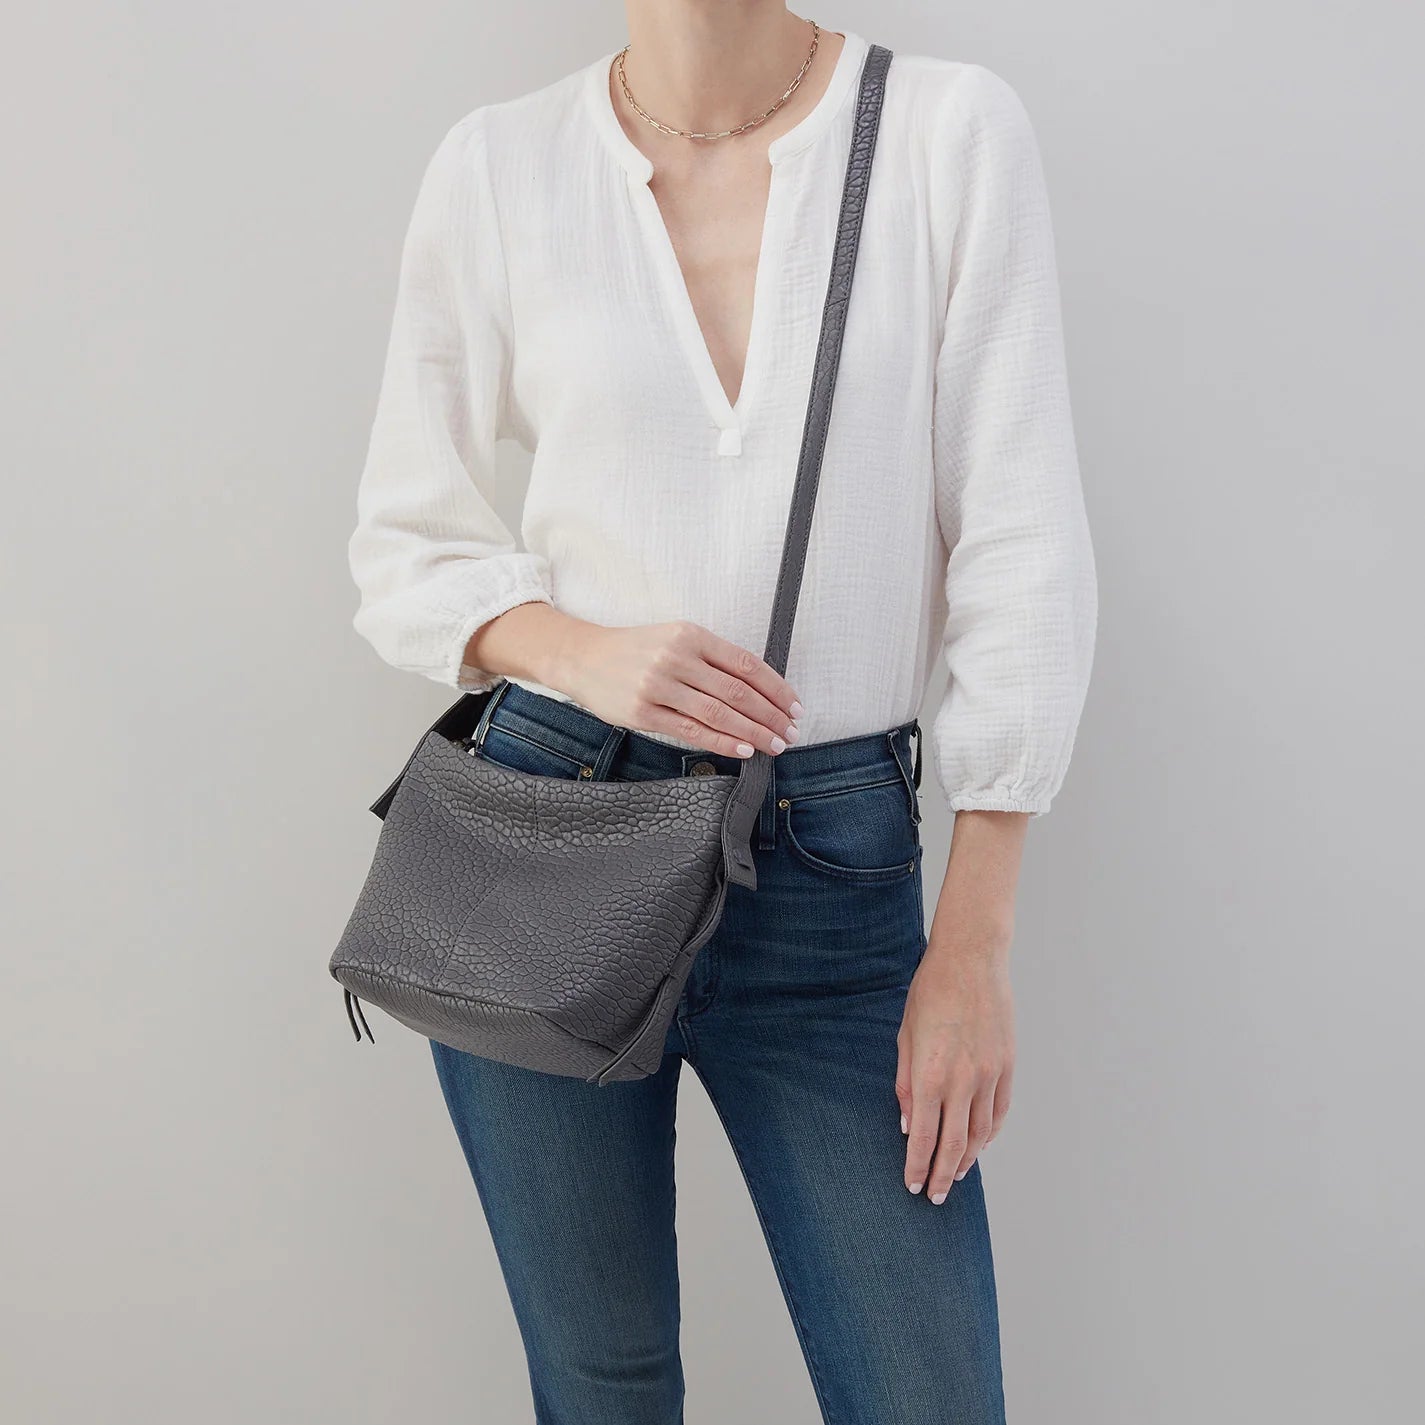 Bags for Women,Casual Nylon Purse Handbag Crossbody Bag Shoulder Bag Handbag  for Women Purses for Women Shoulder Bag Medium Grey One Size - Walmart.com